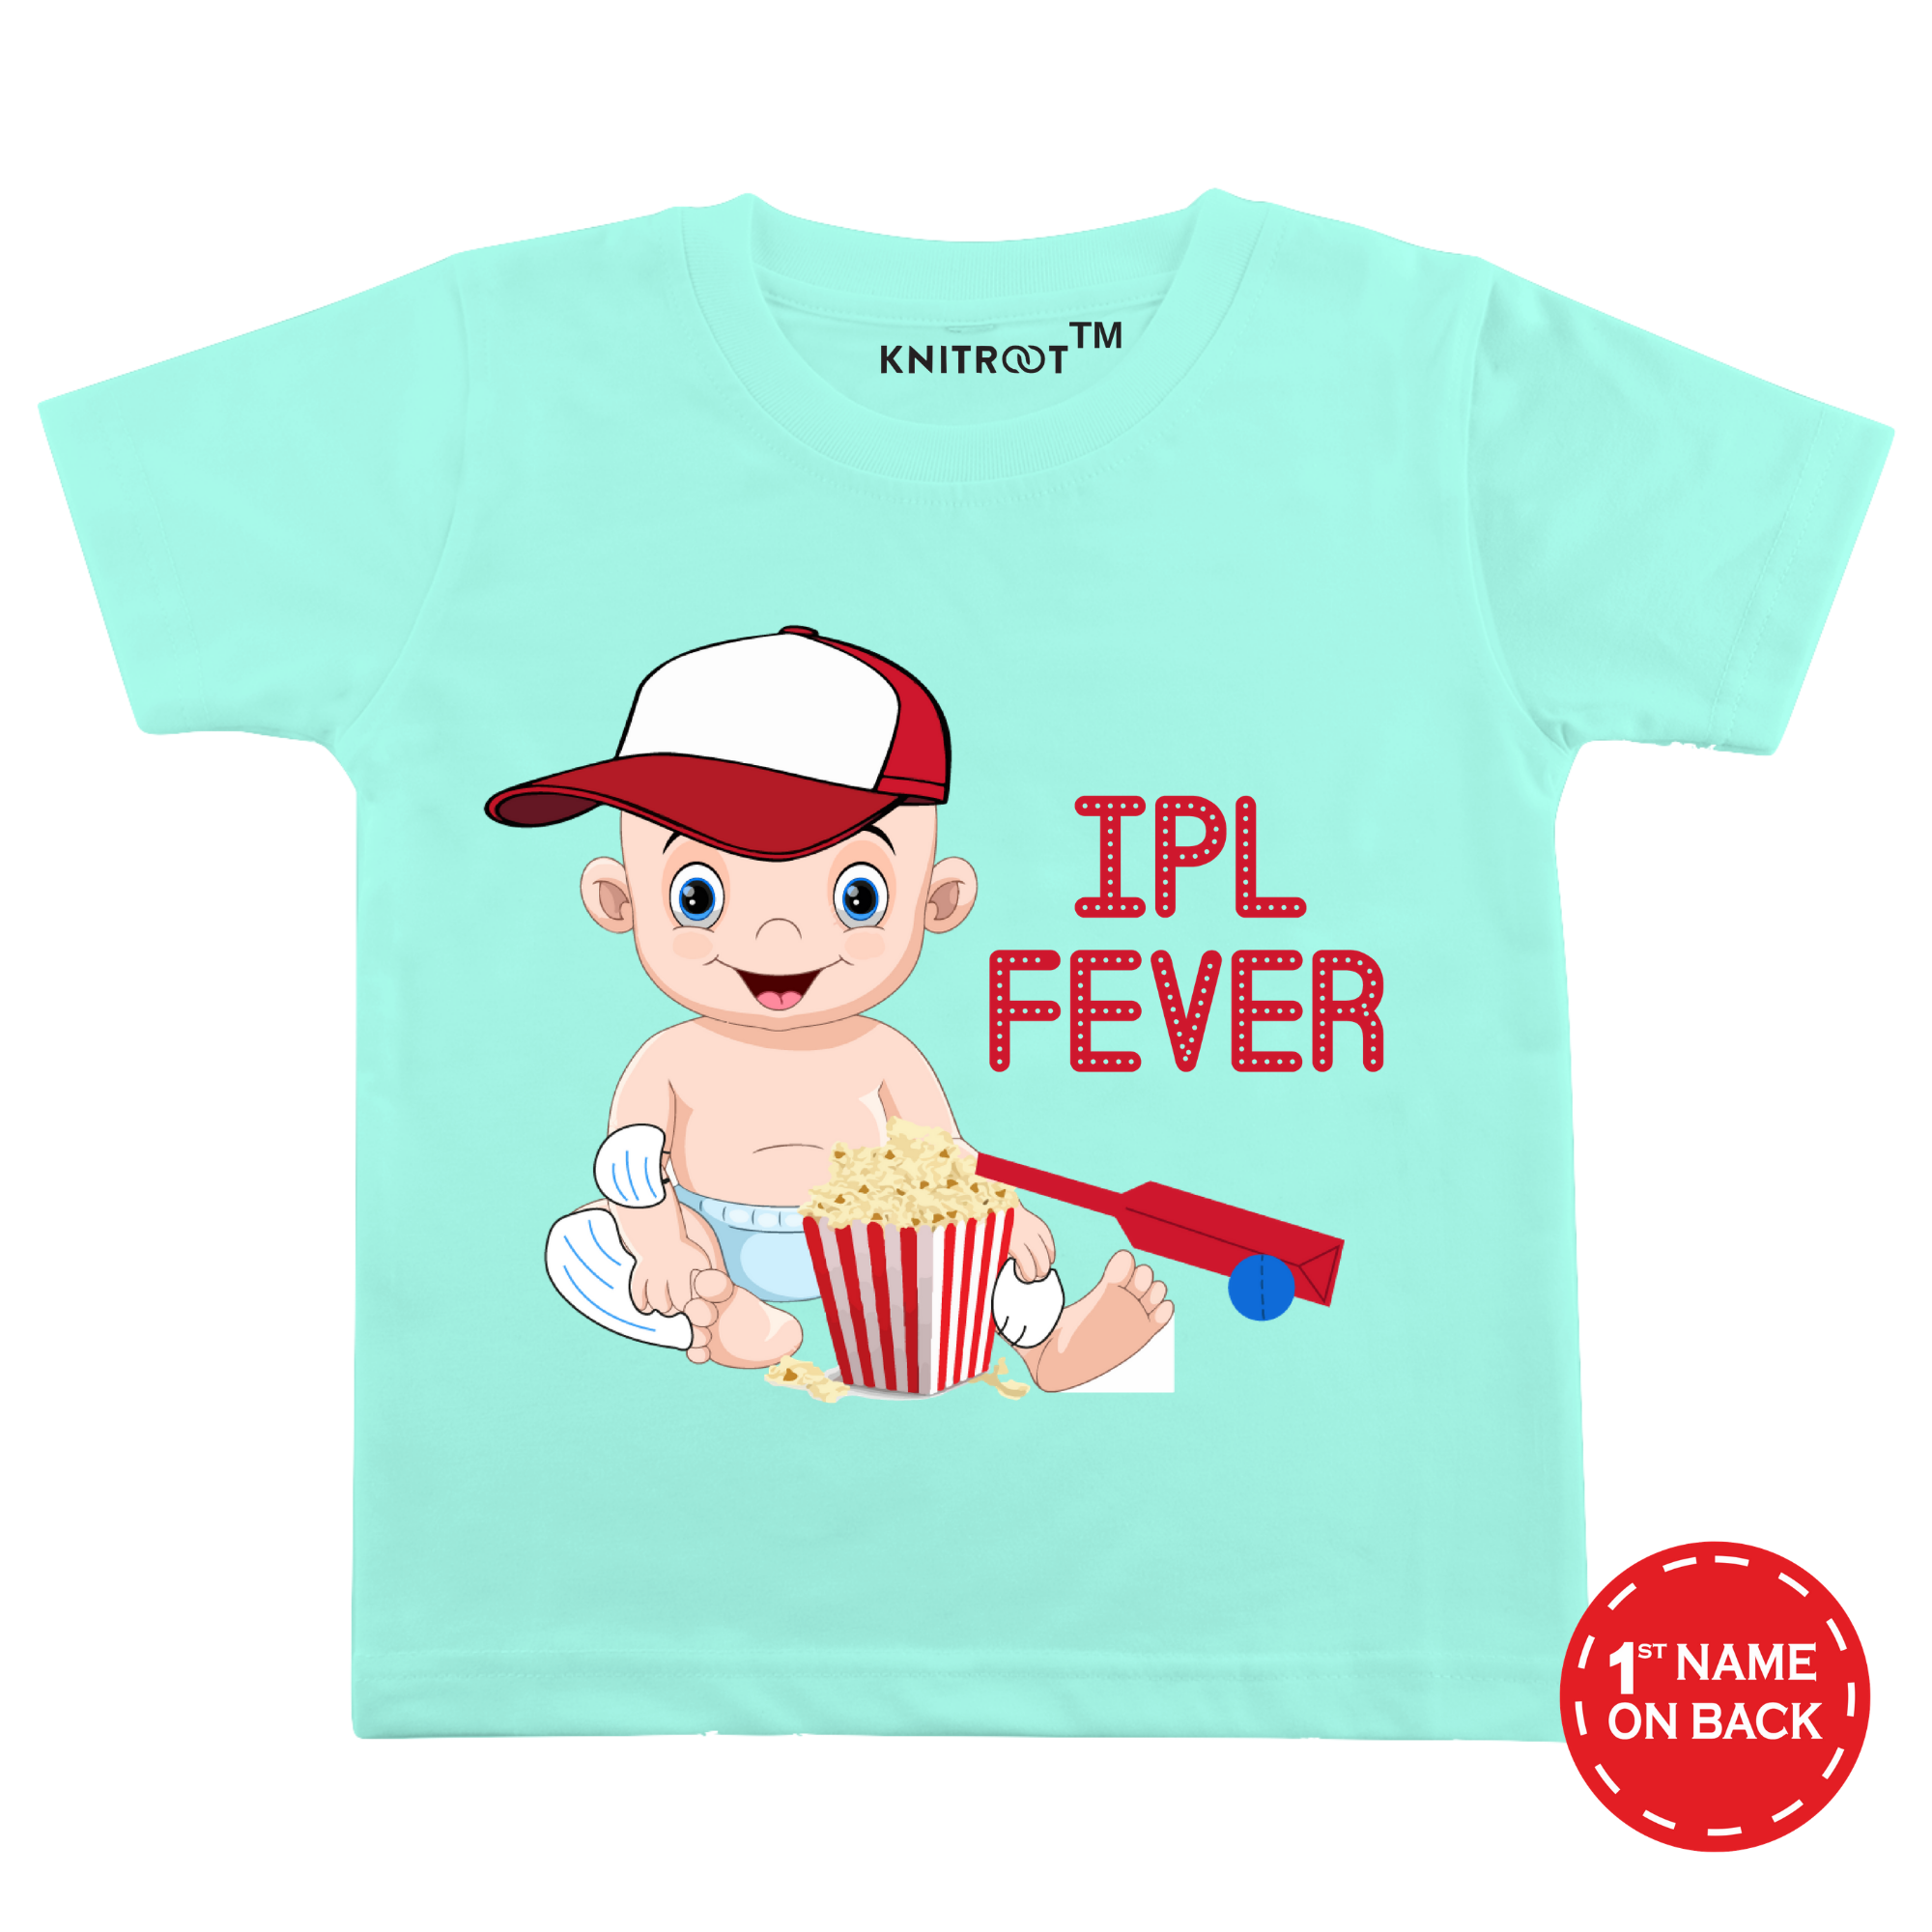 IPL Fever